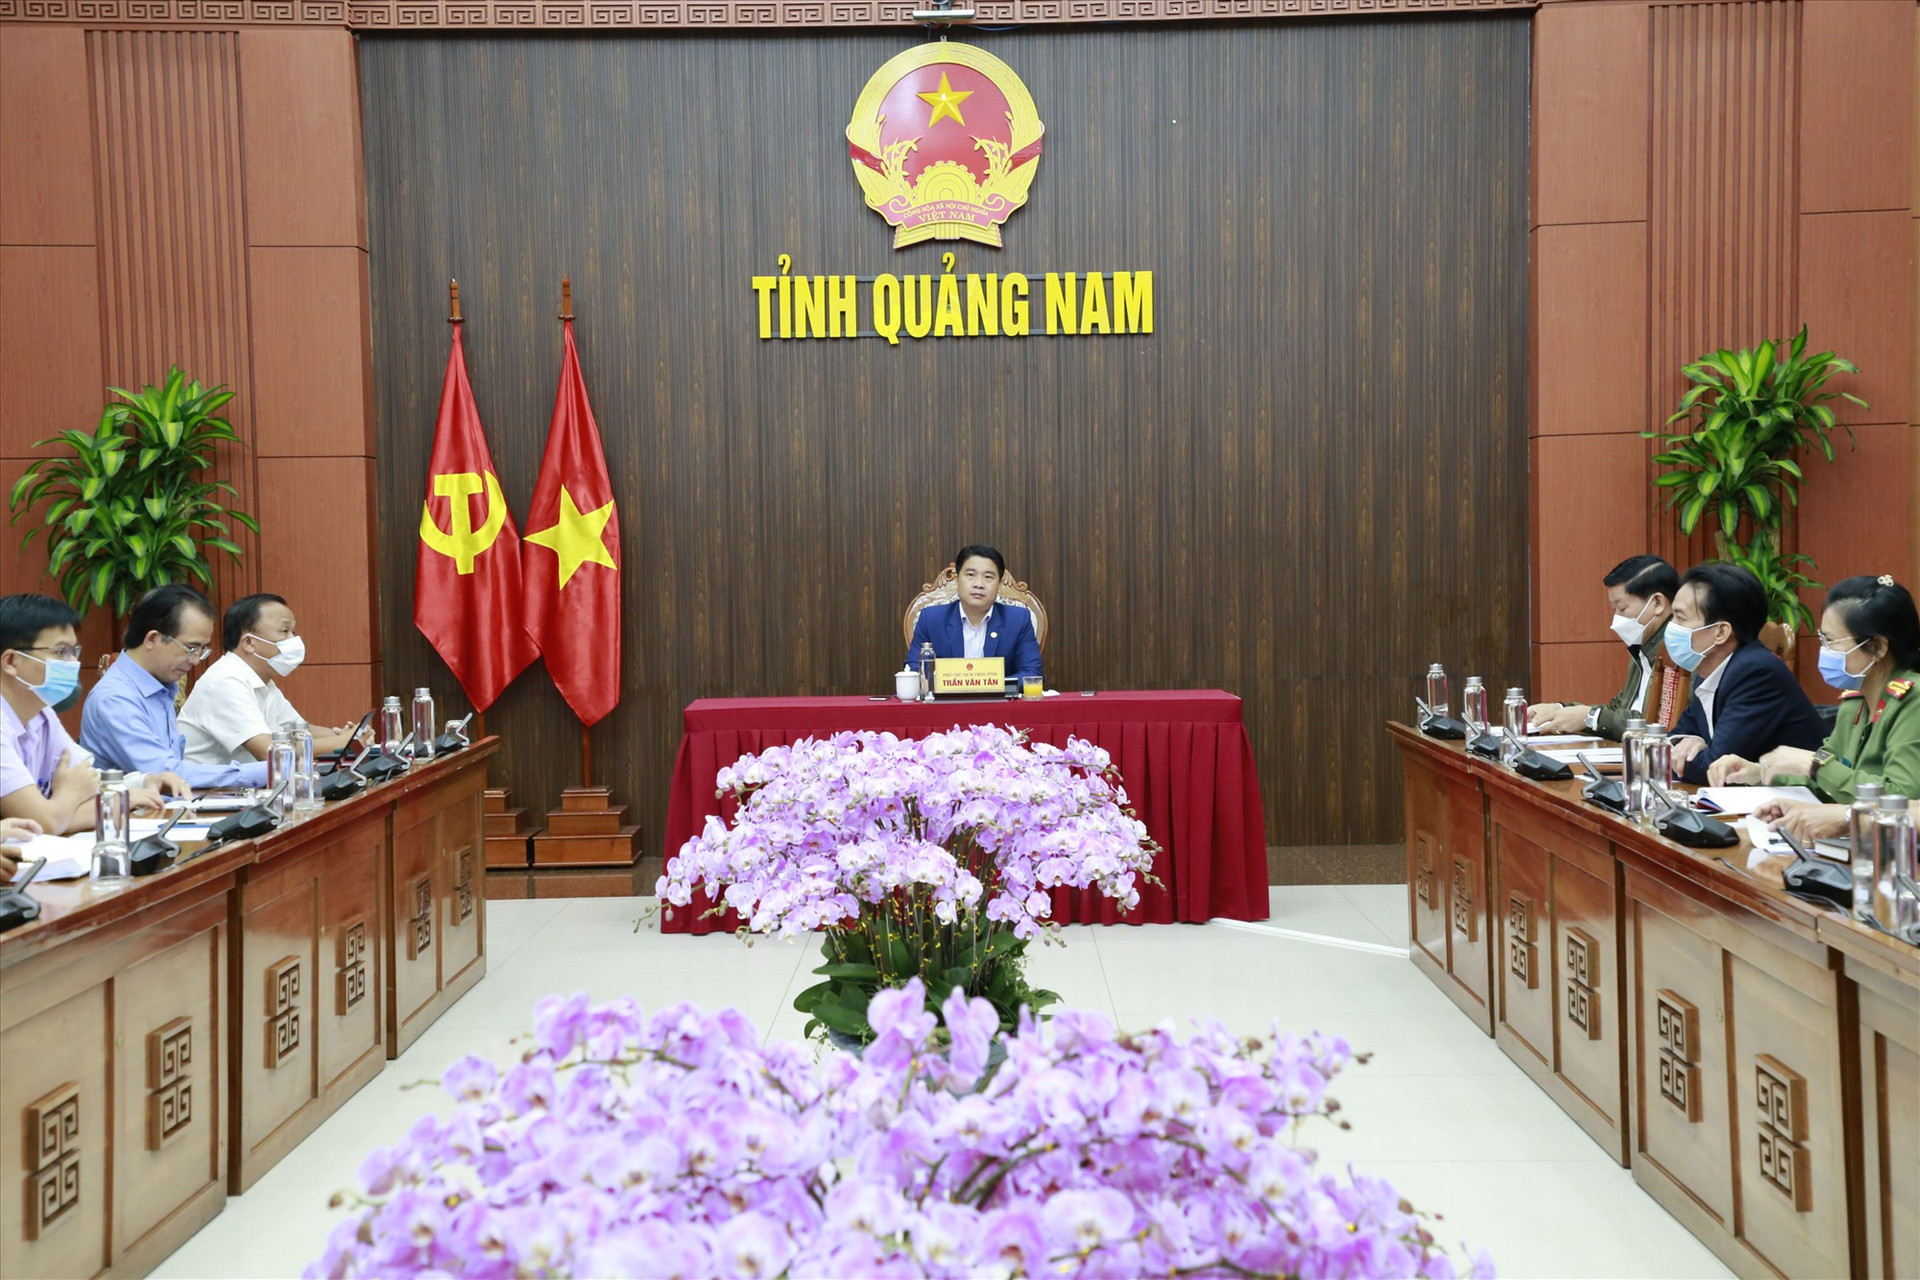 Phó Chủ tịch UBND tỉnh Trần Văn Tân chủ trì buổi làm việc. Ảnh: T.C